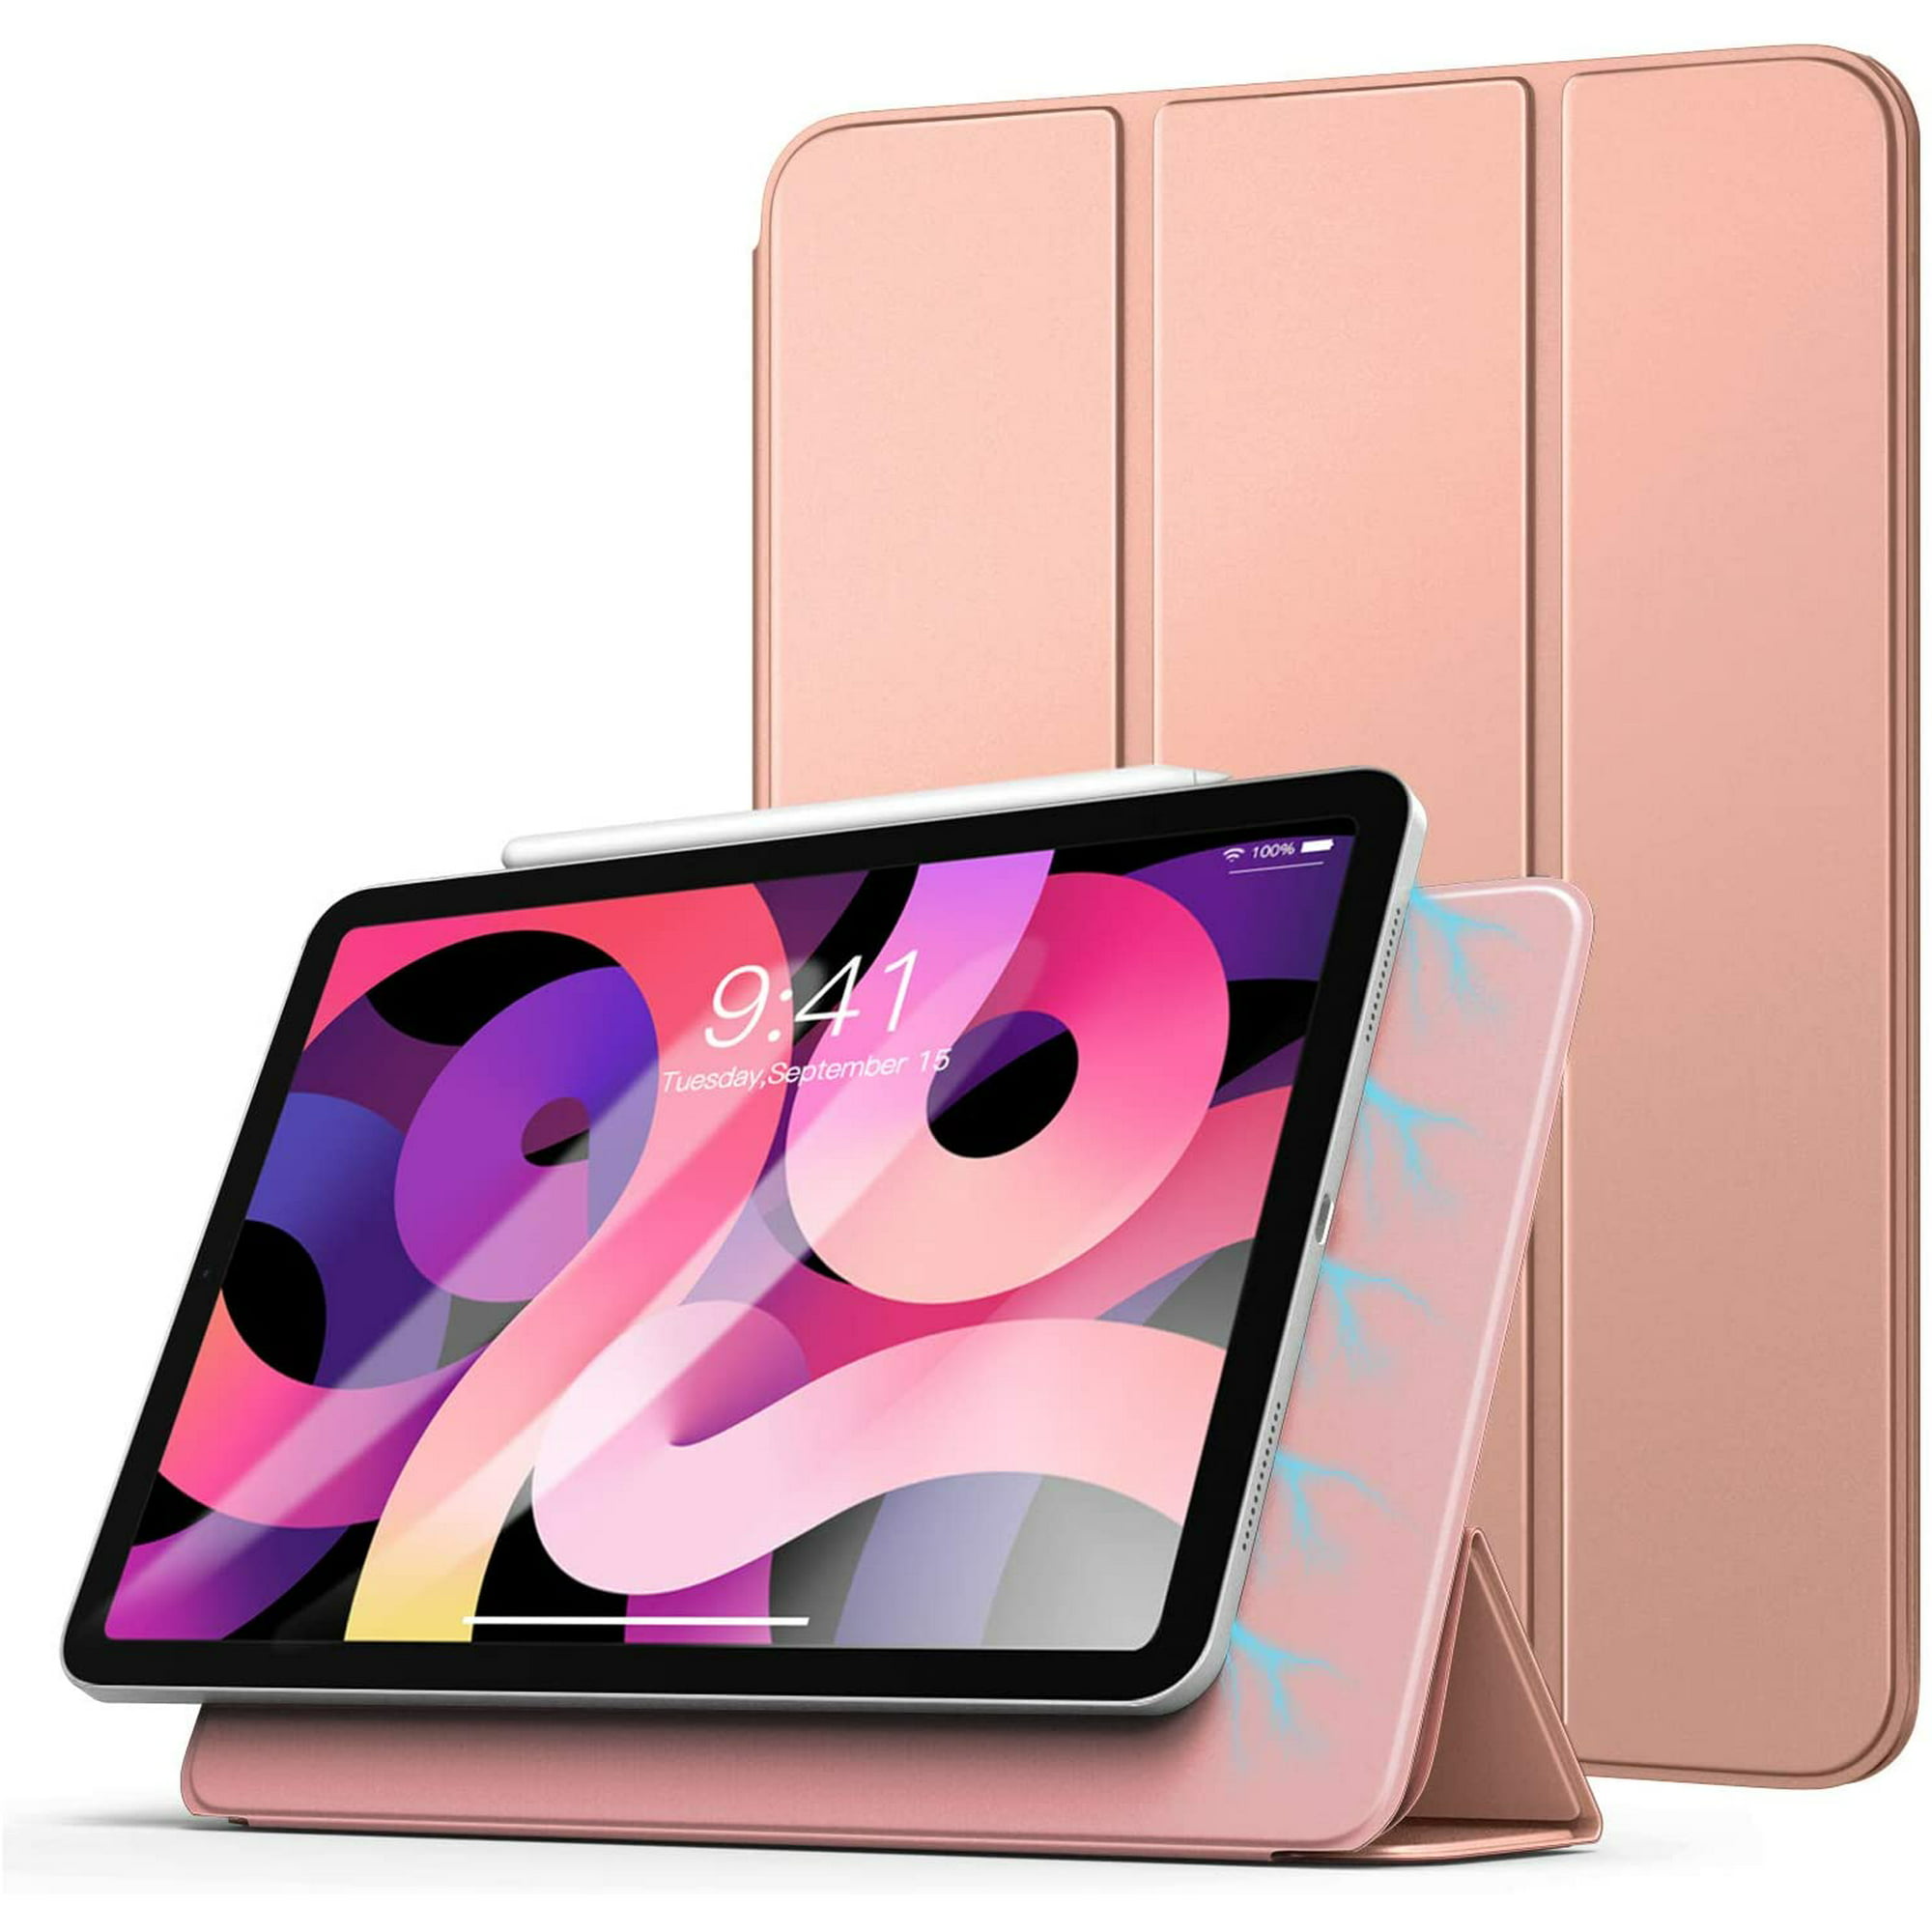 Nuevo ipad pro color rosa de apple inc lindo dispositivo pantalla de  maqueta ipad pro y tableta en la parte posterior lápiz de apple ilustración  vectorial alto detalle editorial